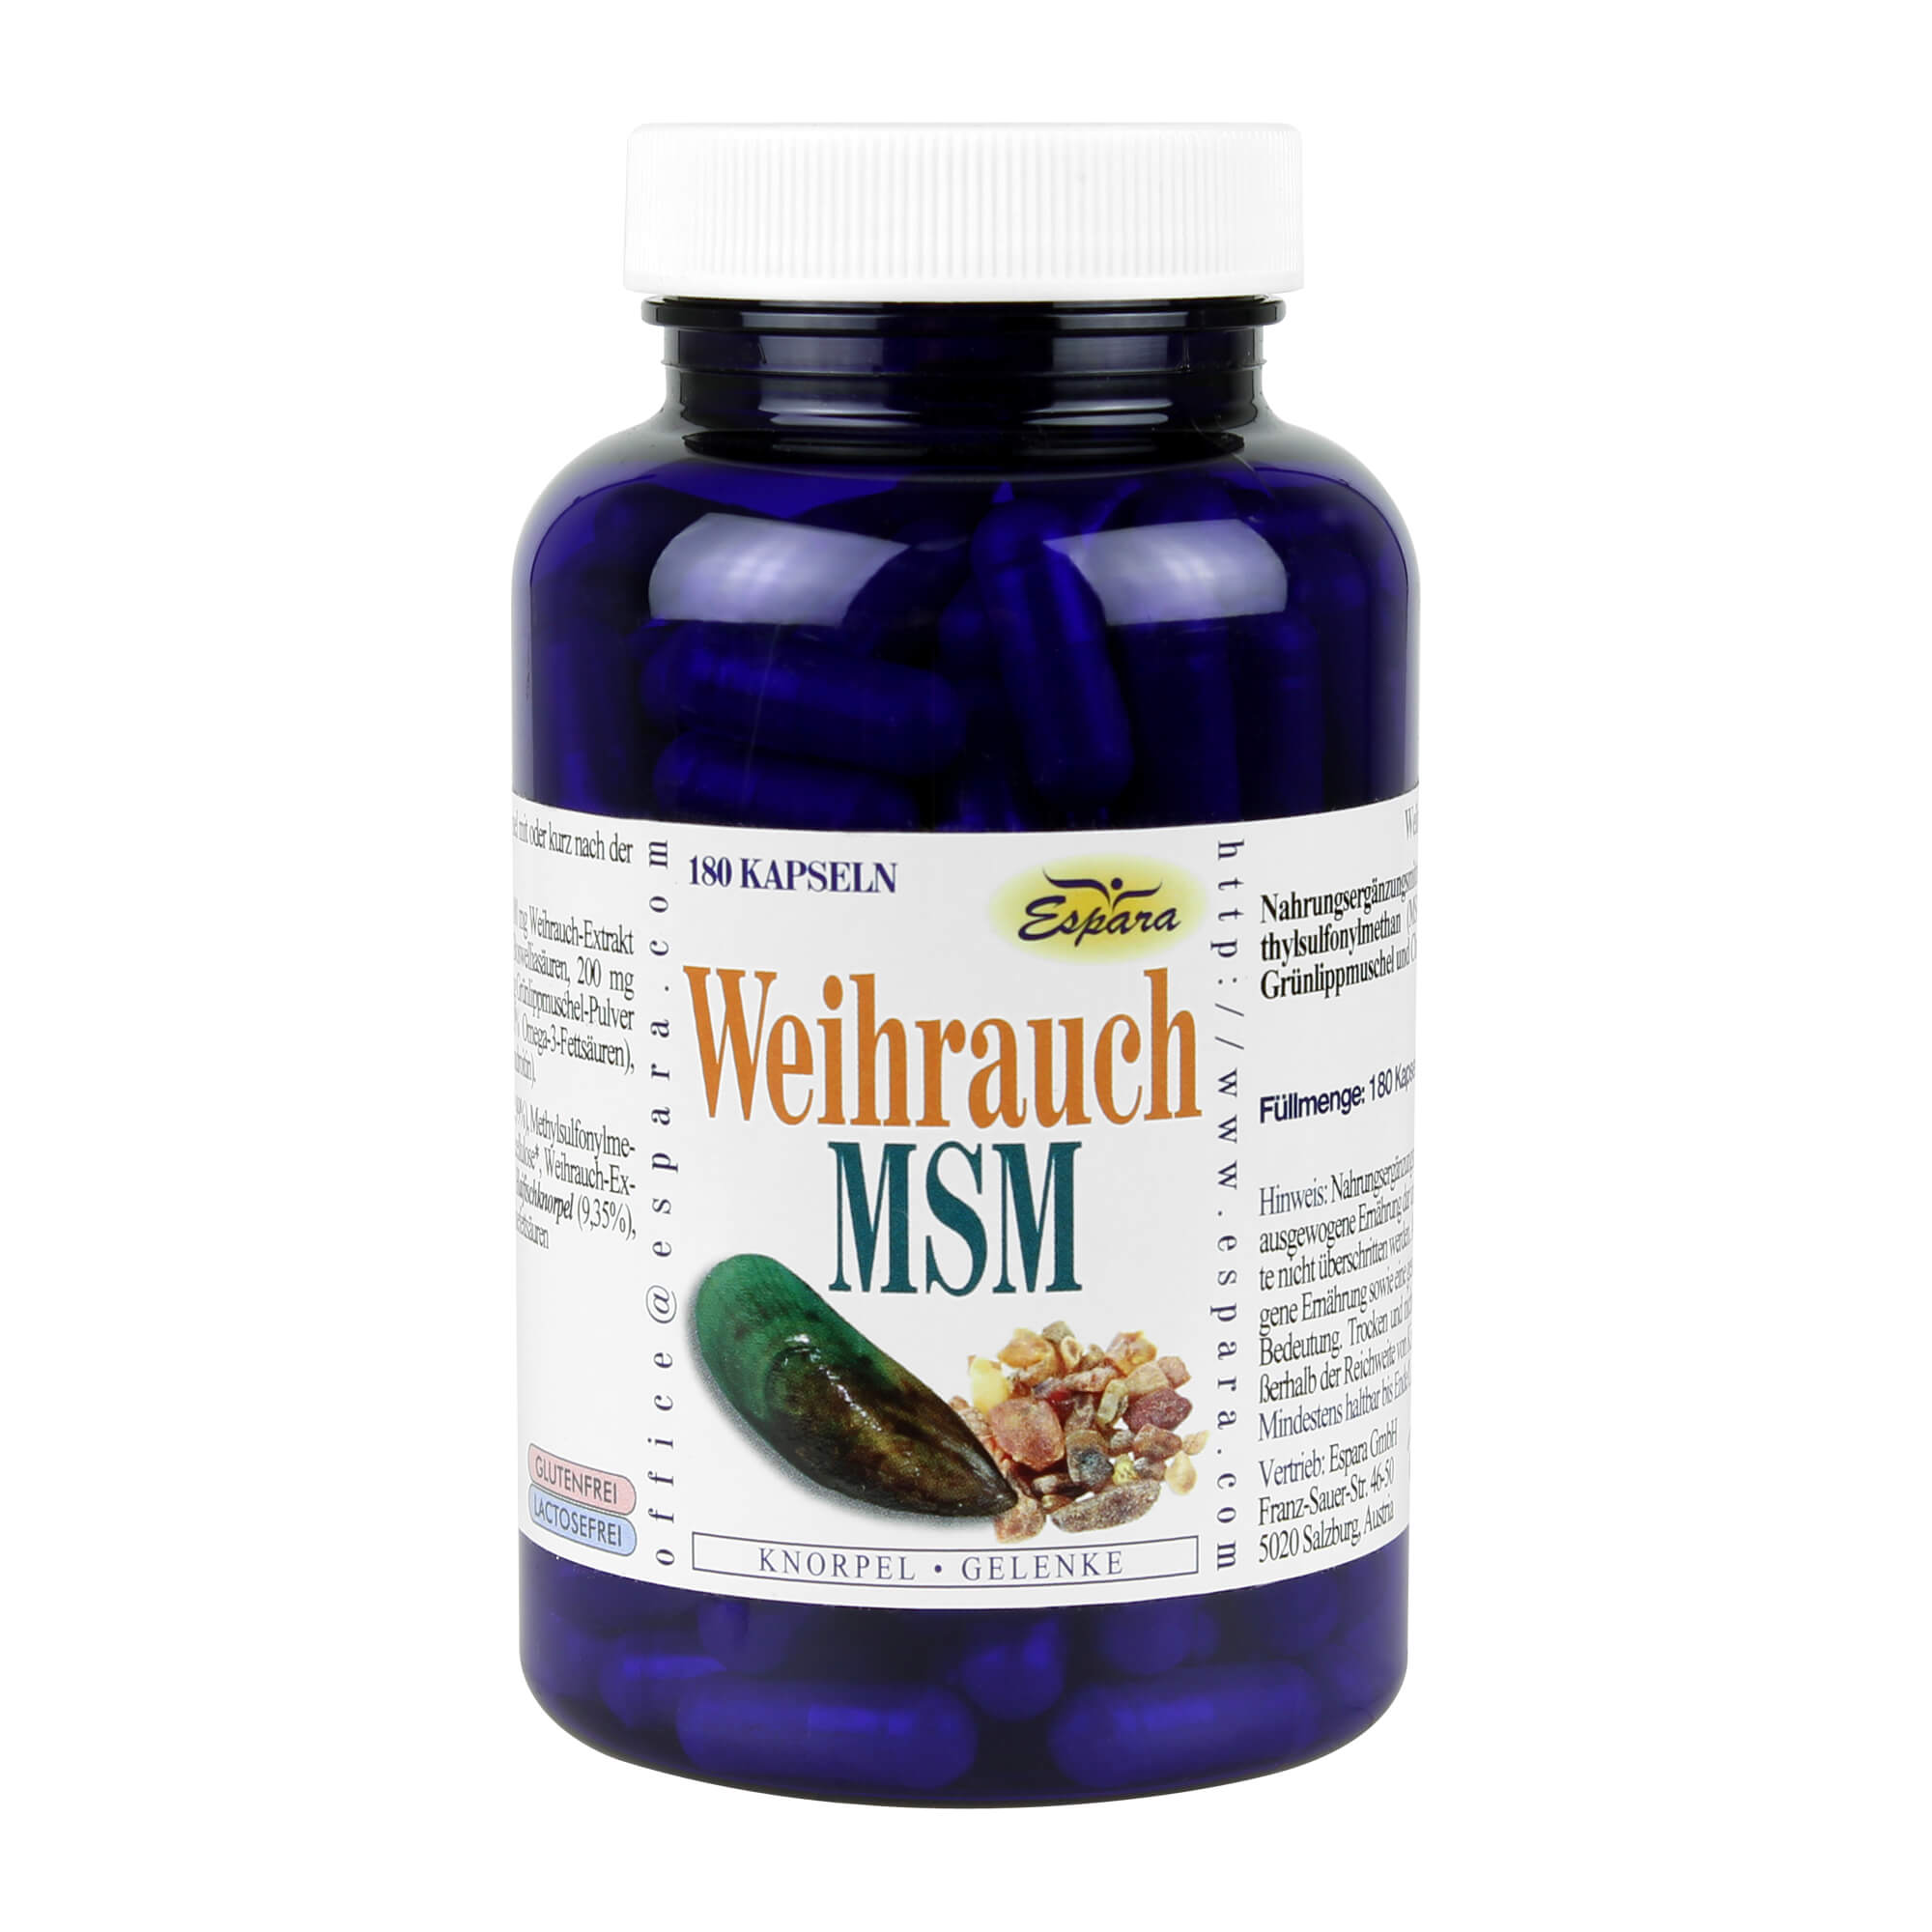 Nahrungsergänzungsmittel mit Weihrauch und Methylsulfonylmethan (MSM) in Kombination mit Grünlippmuschel und Chondroitinsulfat.